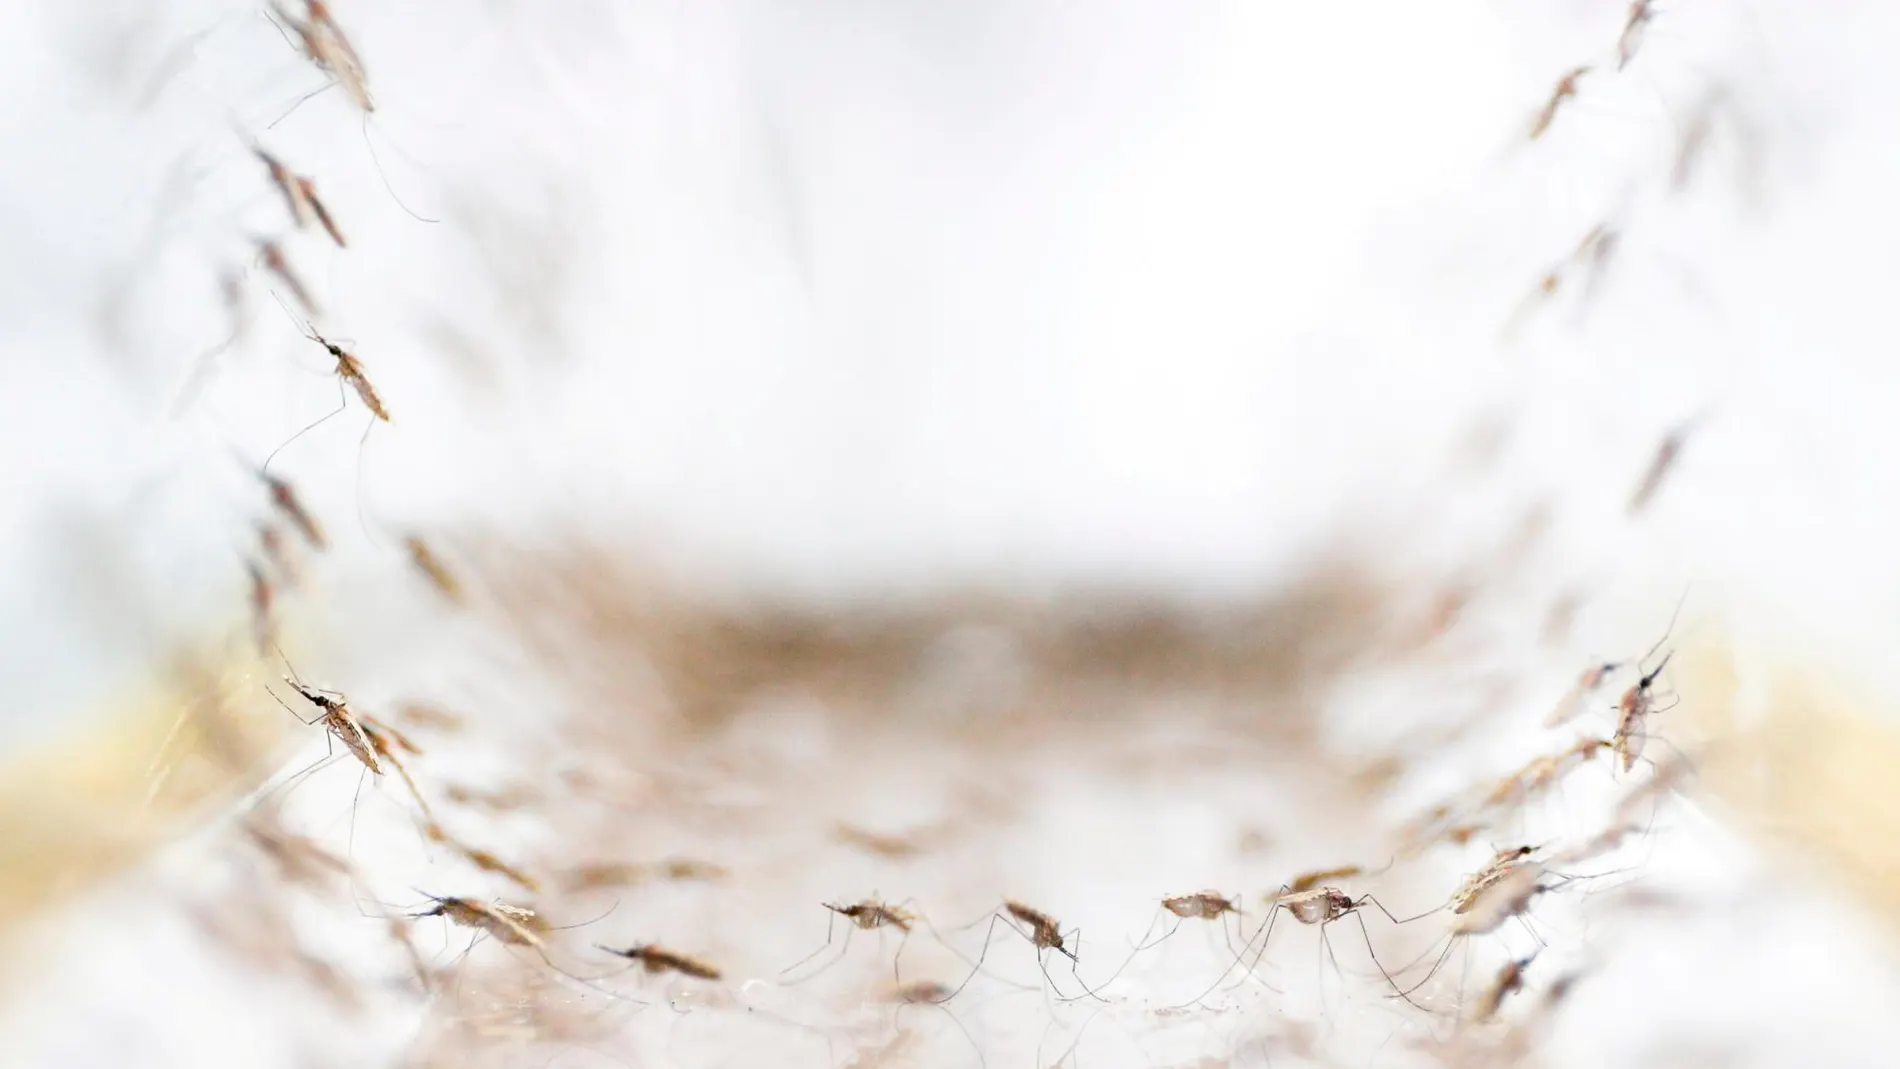 Mosquitos responsables de la malaria, aislados en un laboratorio el pasado mes de noviembre / Reuters